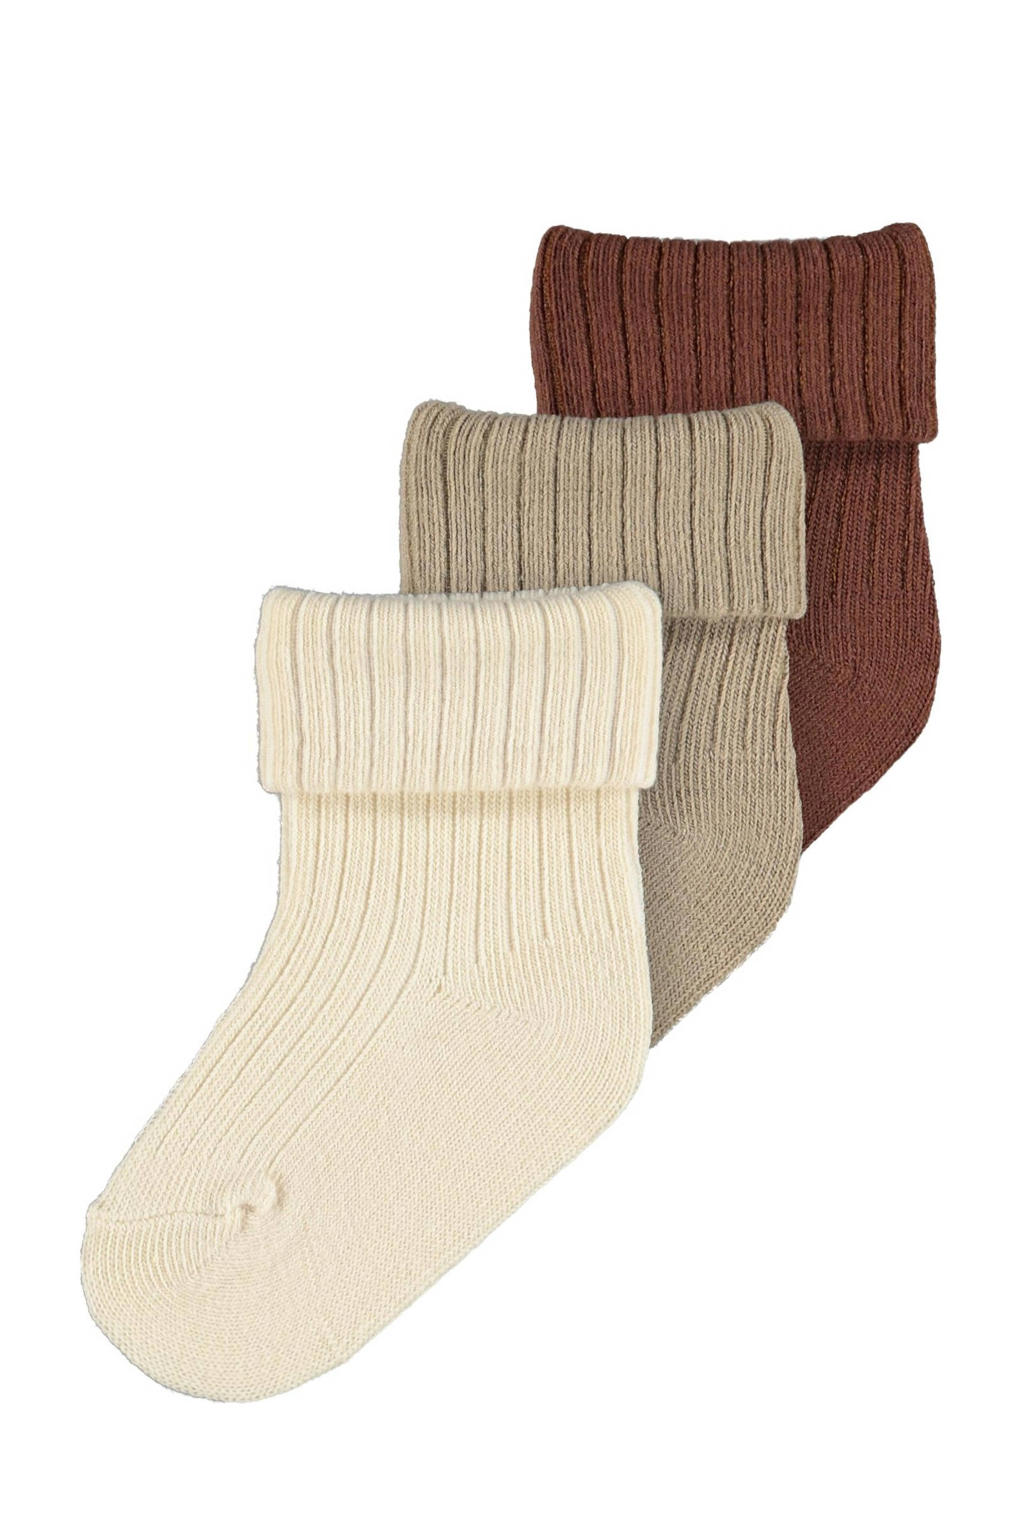 NAME IT BABY sokken - set van 3 ecru/beige/bruin